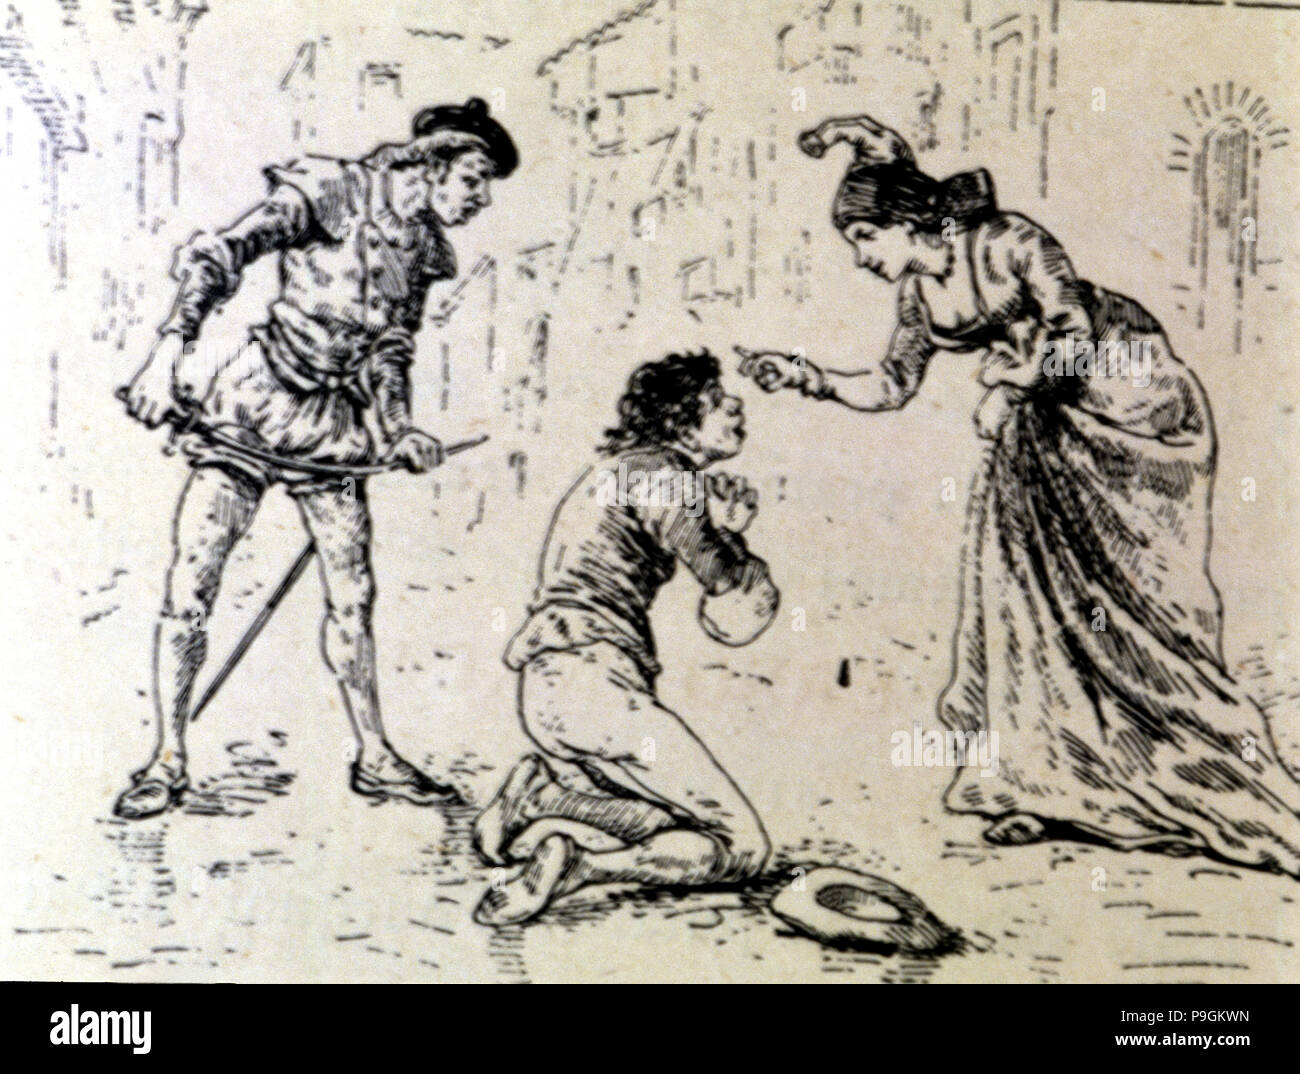 Incisione, un povero dinanzi a una signora in una edizione di "La Comedie Espagnole' da Lope de Rueda, 1883. Foto Stock